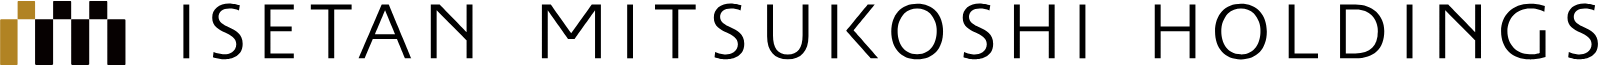 Isetan Mitsukoshi Holdings logo large (transparent PNG)